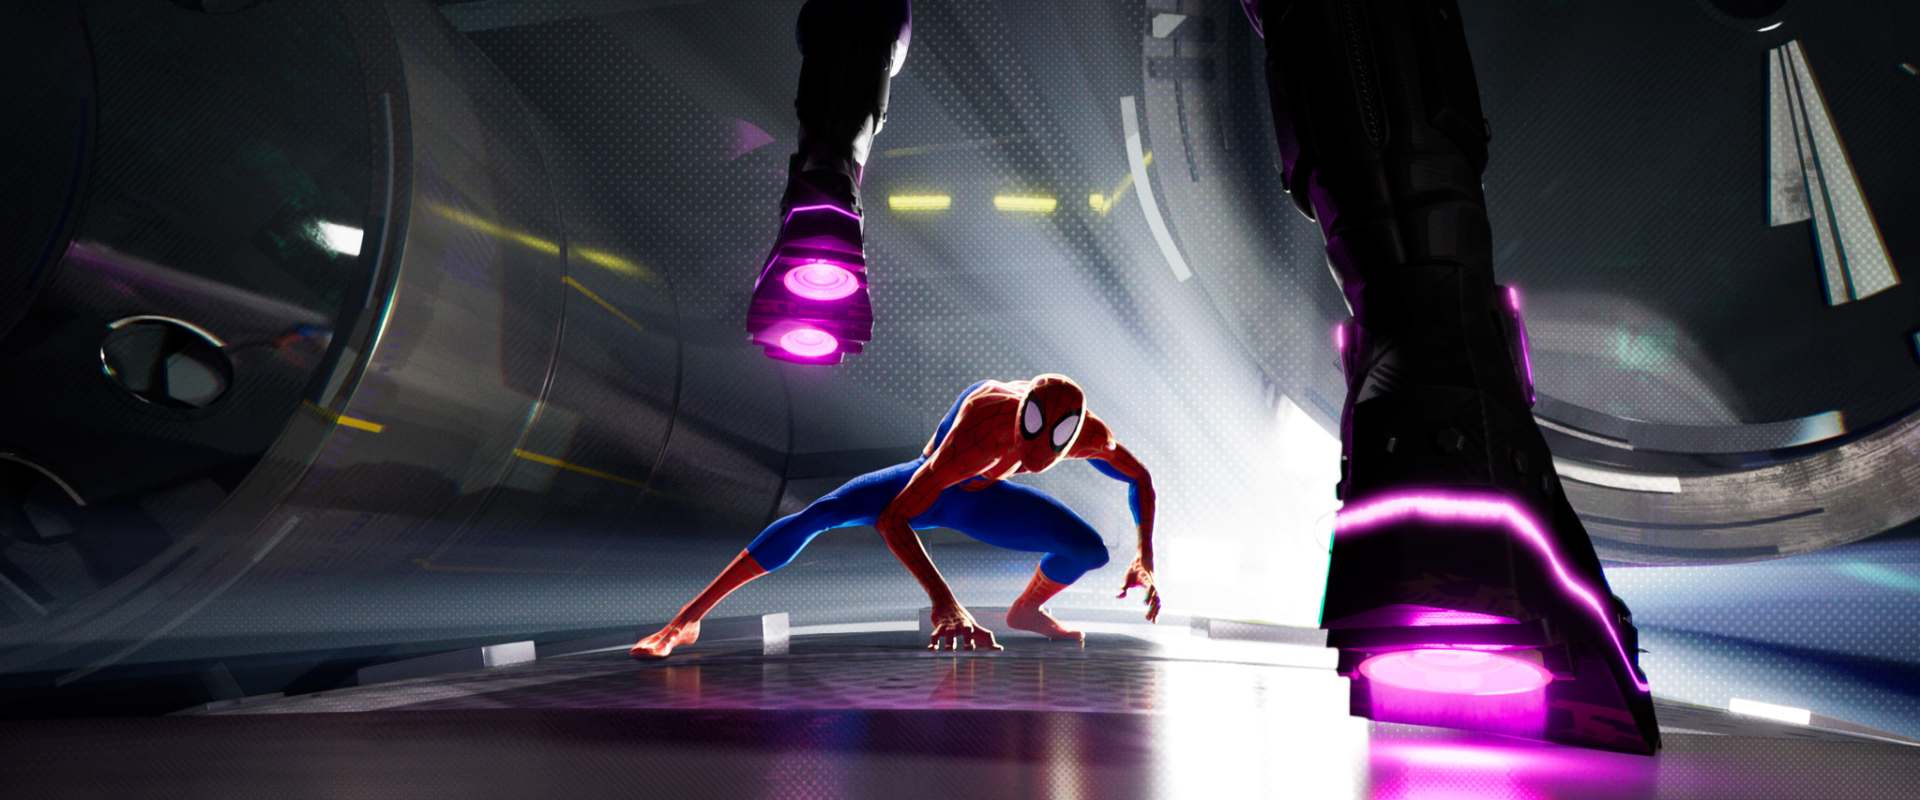 Spider-Man: Into the Spider-Verse background 1